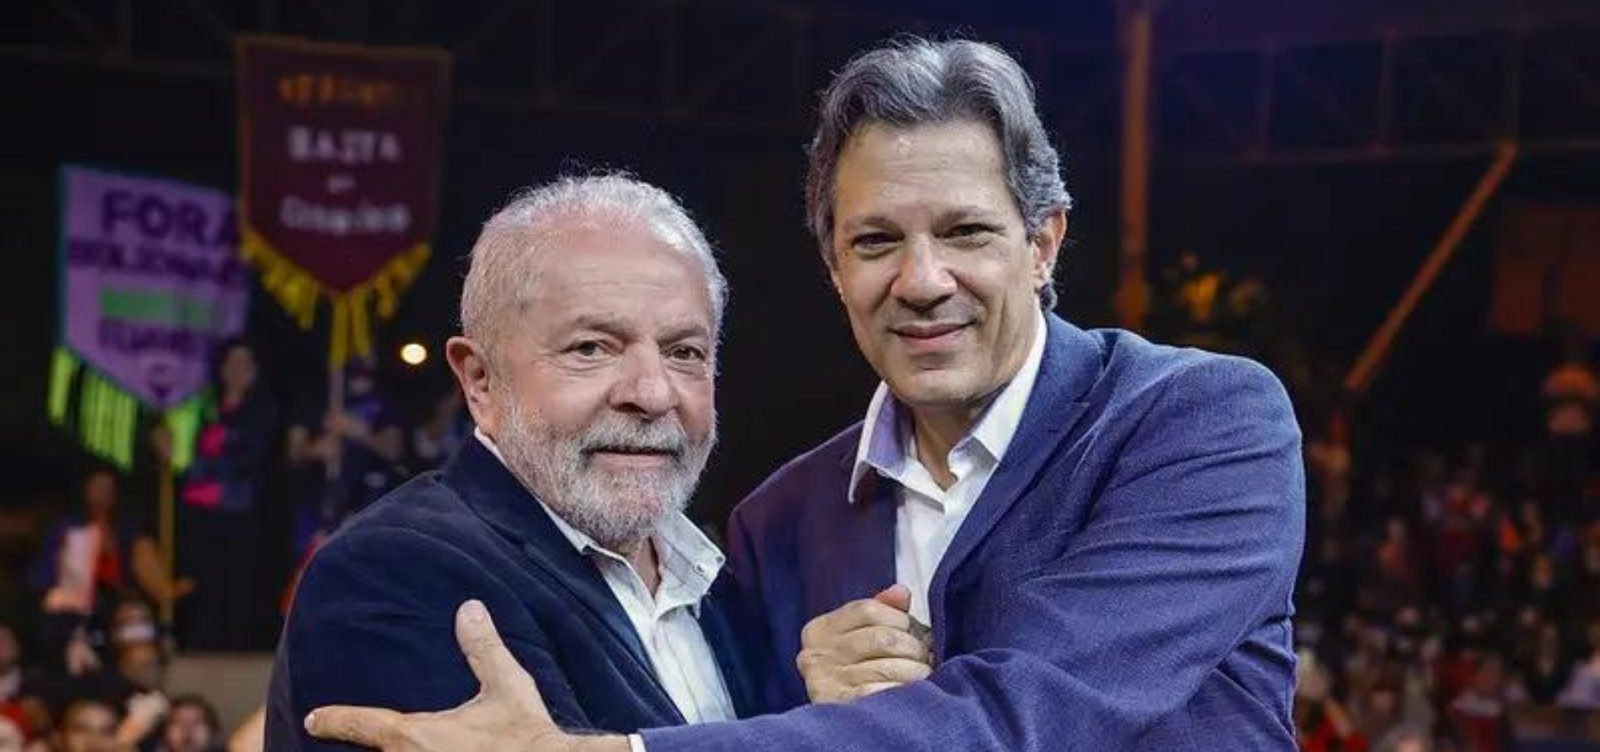 Haddad diz que Lula "vai atuar como controlador" dos investimentos na Petrobras